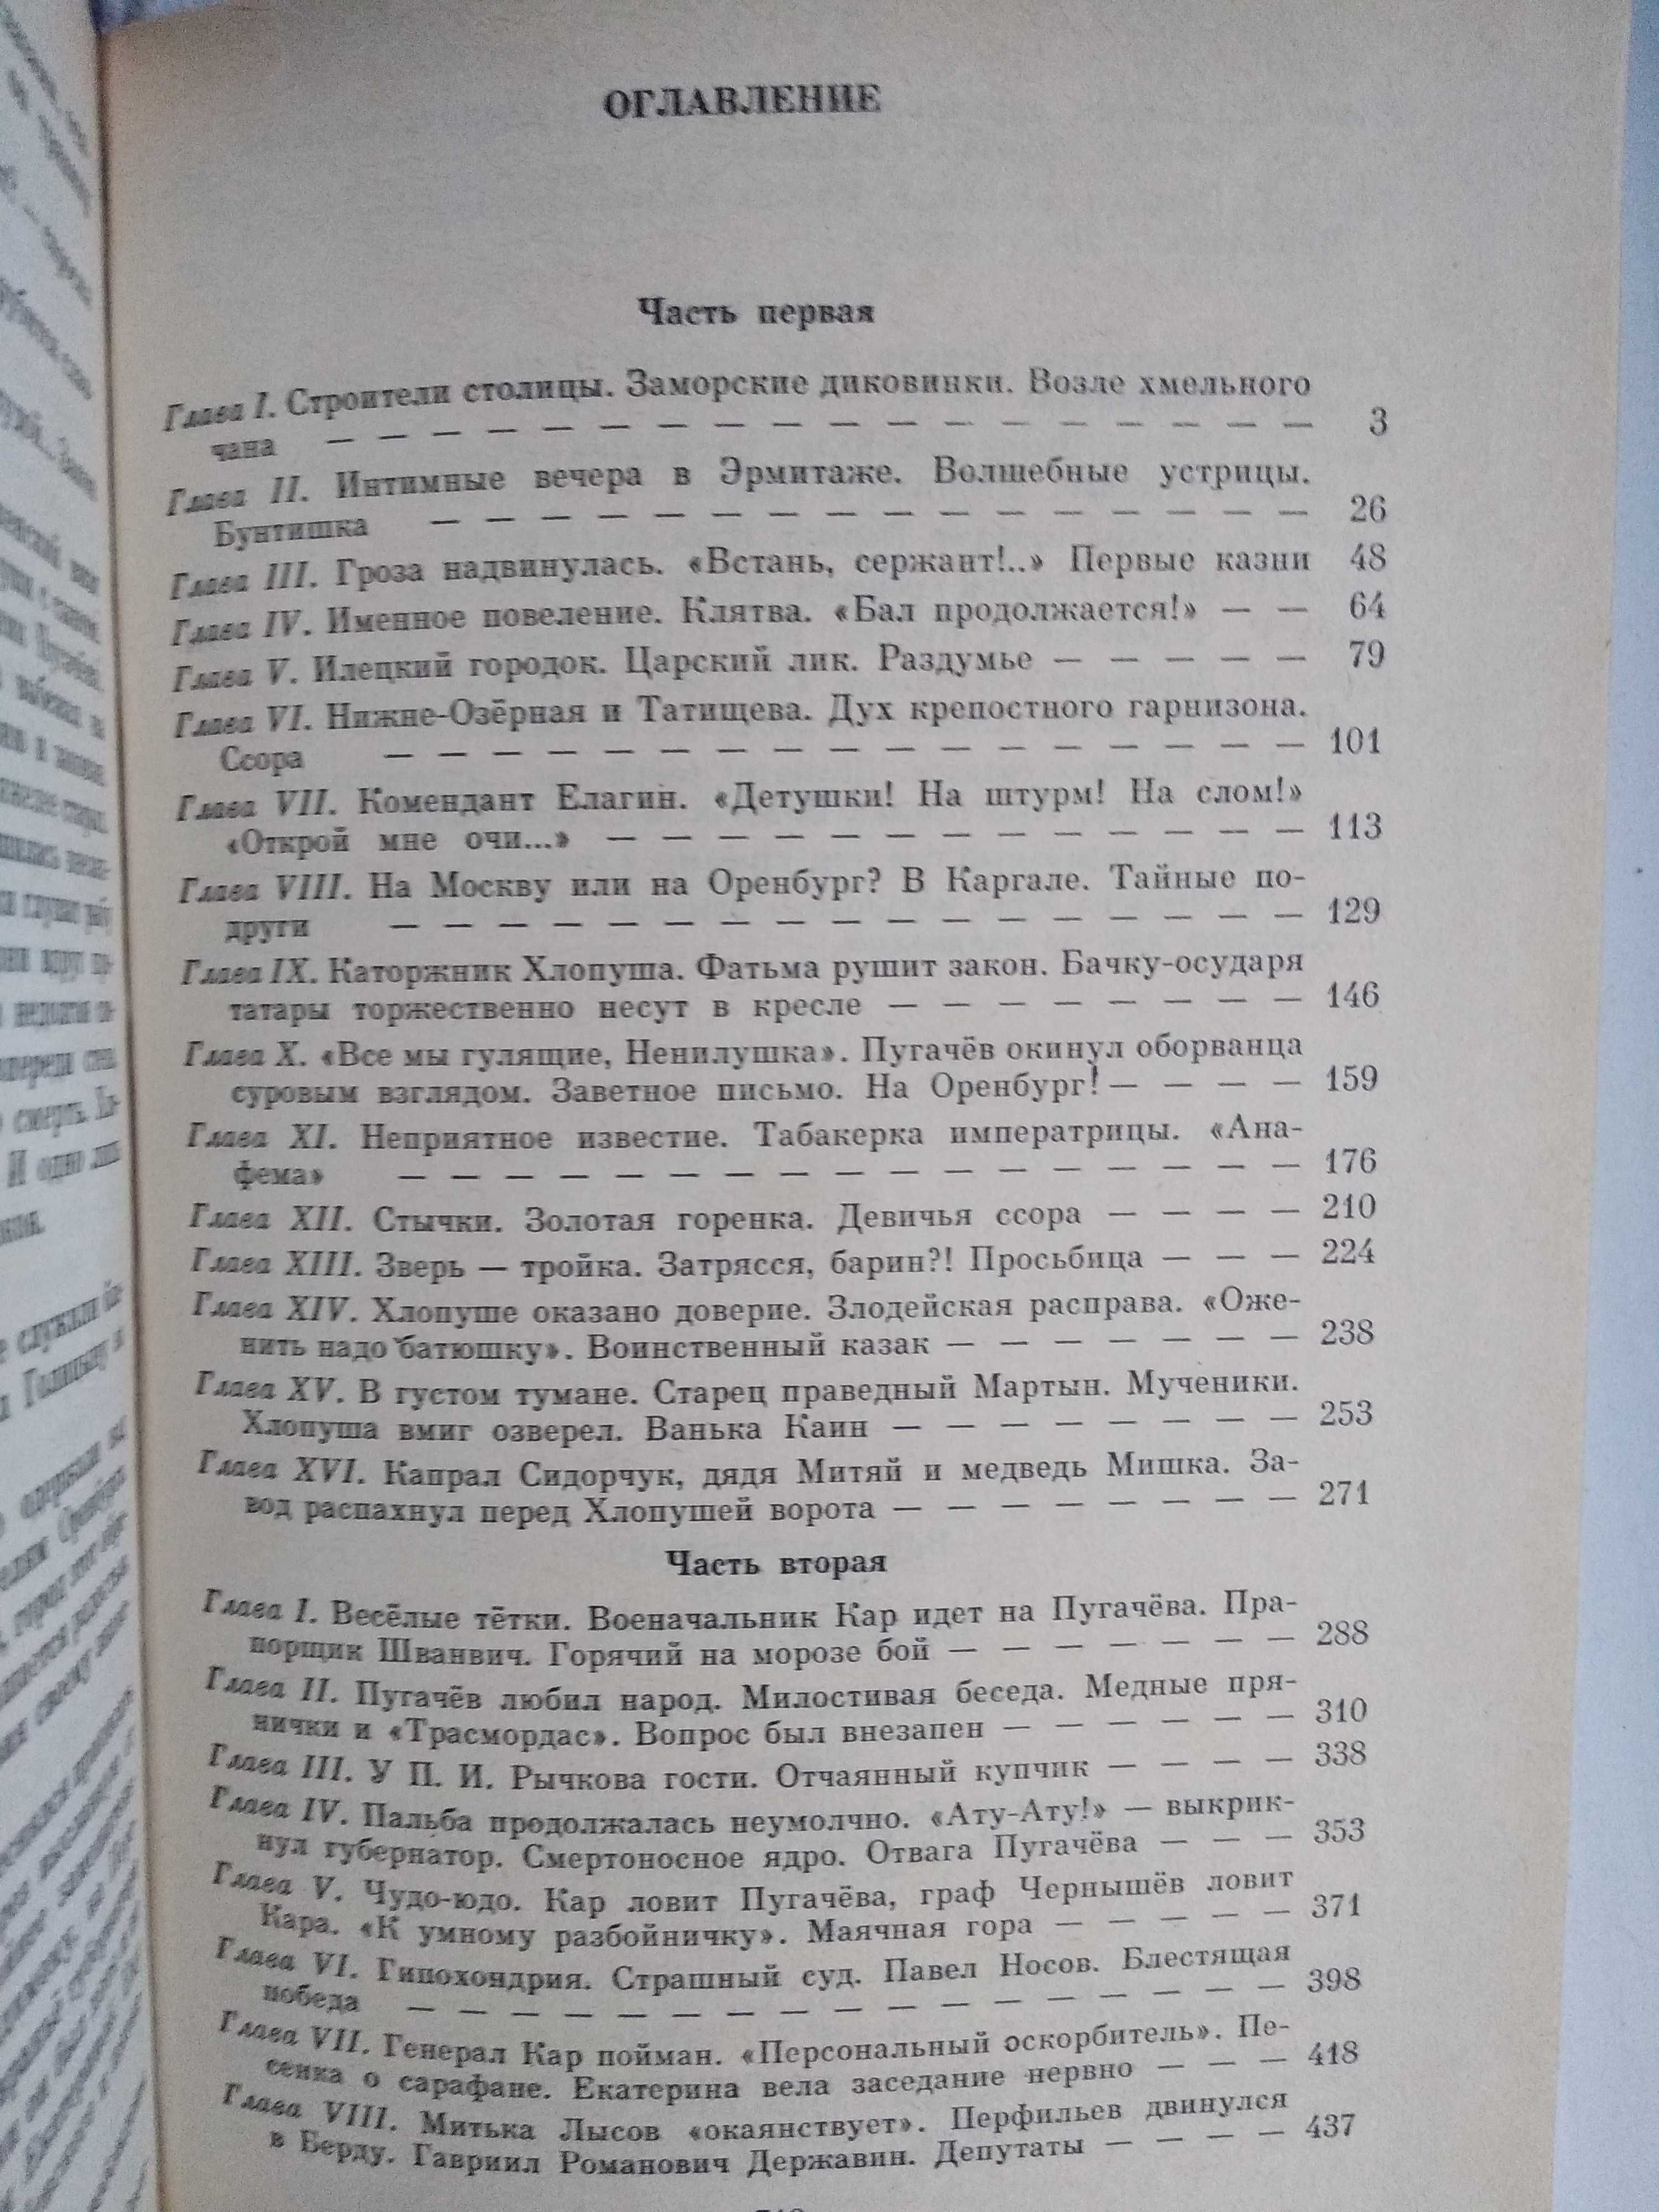 Книги Емельян Пугачев (В. Я. Шишков) все 3 тома